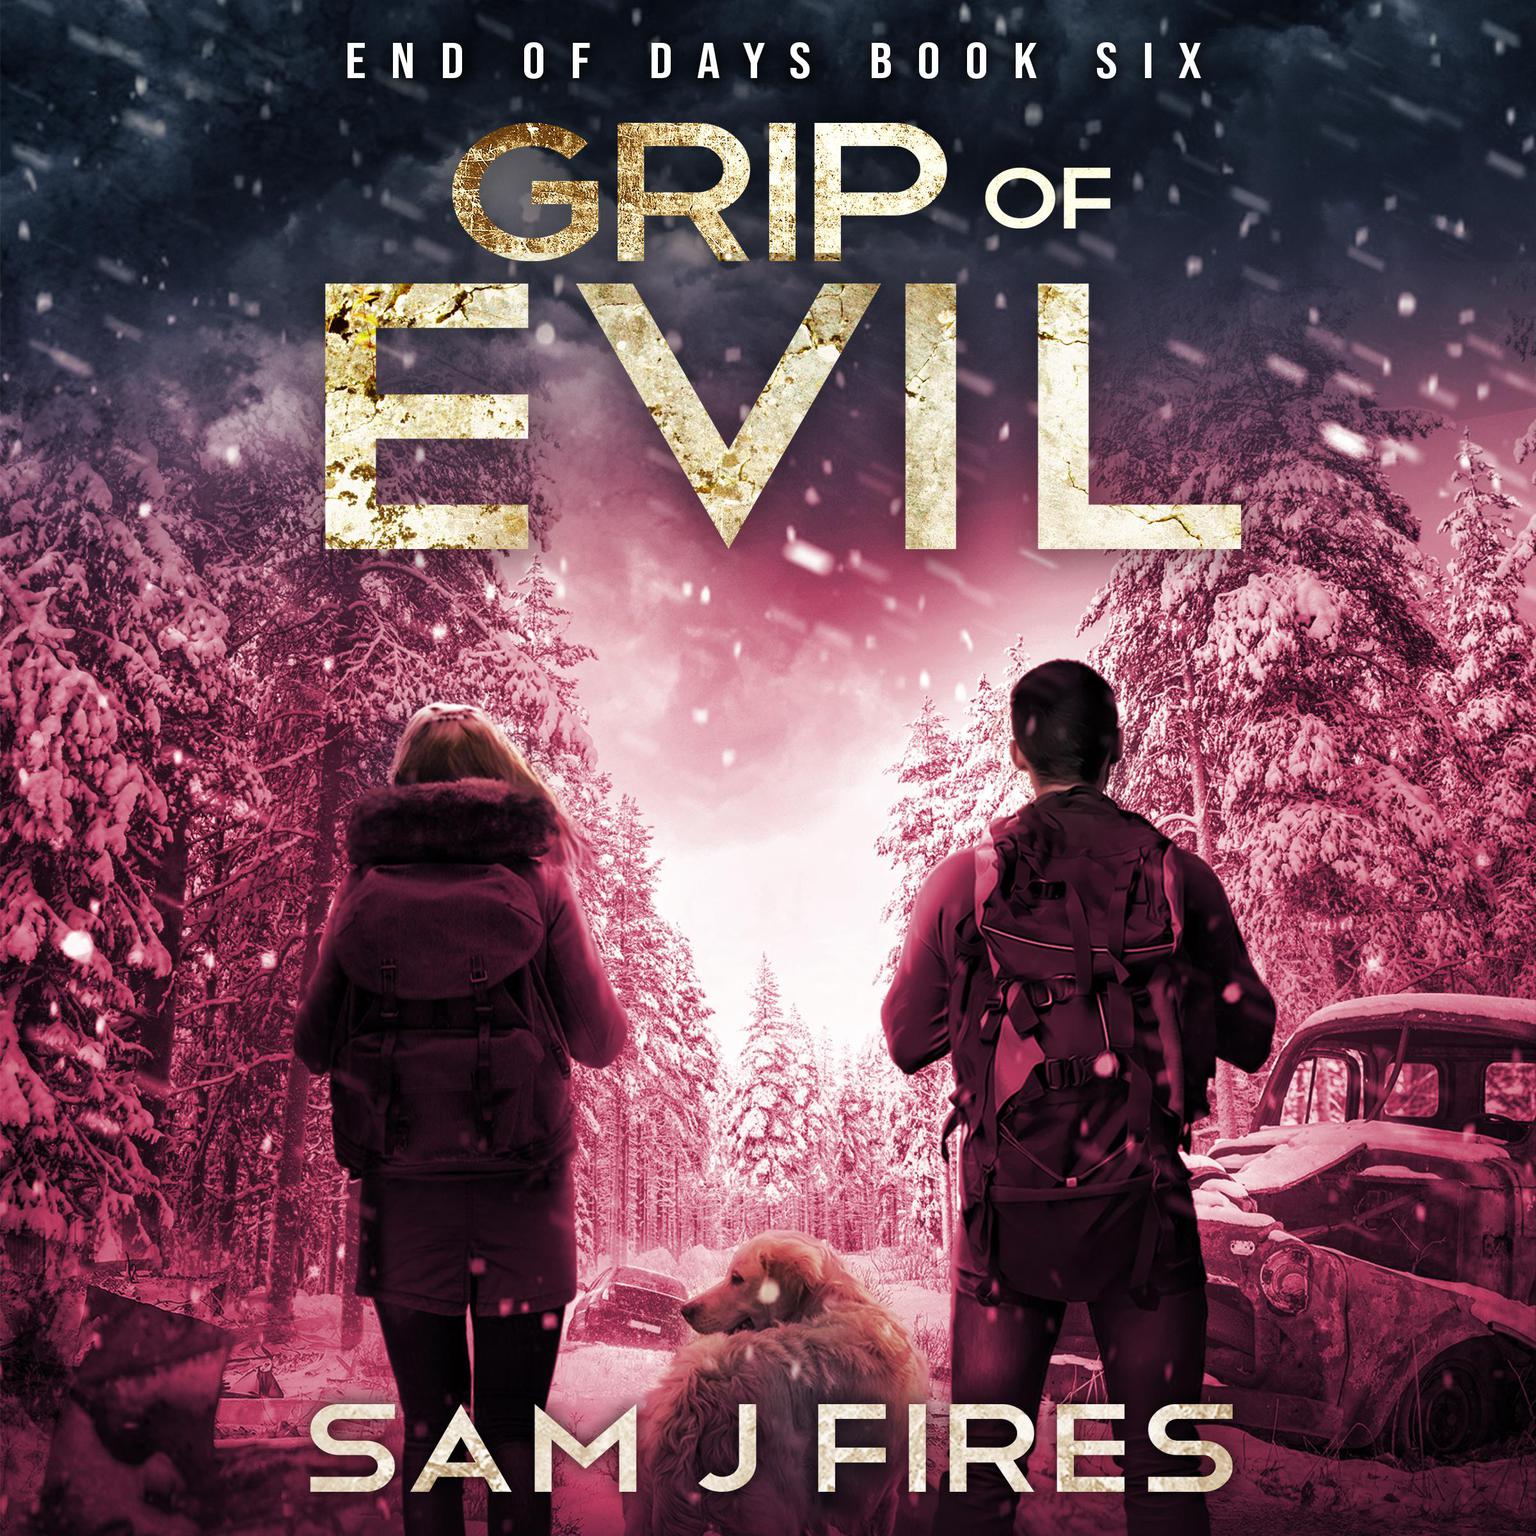 Grip of Evil Audiobook, by Sam J. Fires